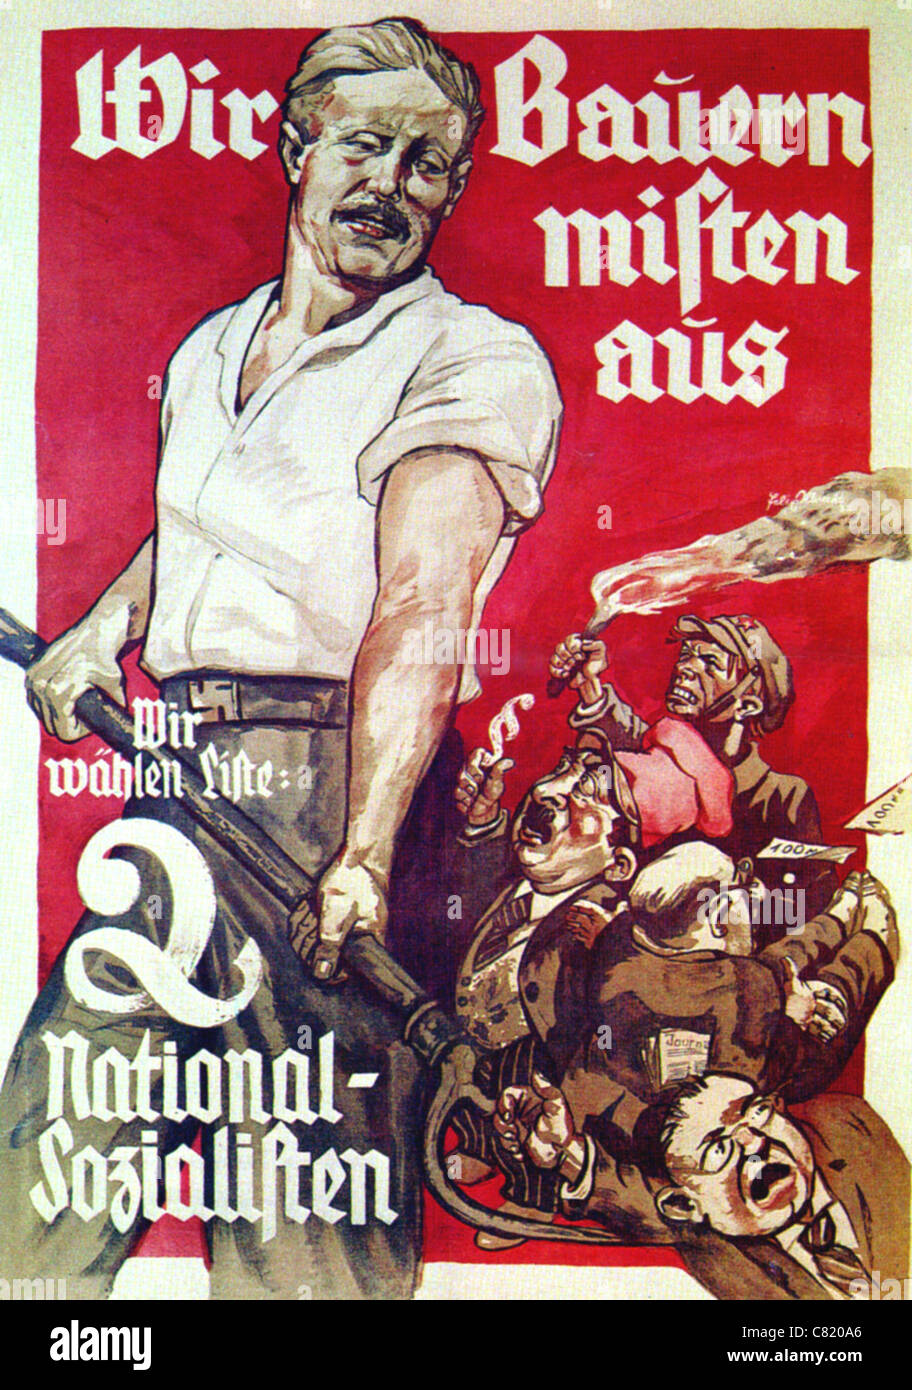 Cartel nacional socialista para 1932 las elecciones alemanas. Véase la descripción a continuación. Foto de stock